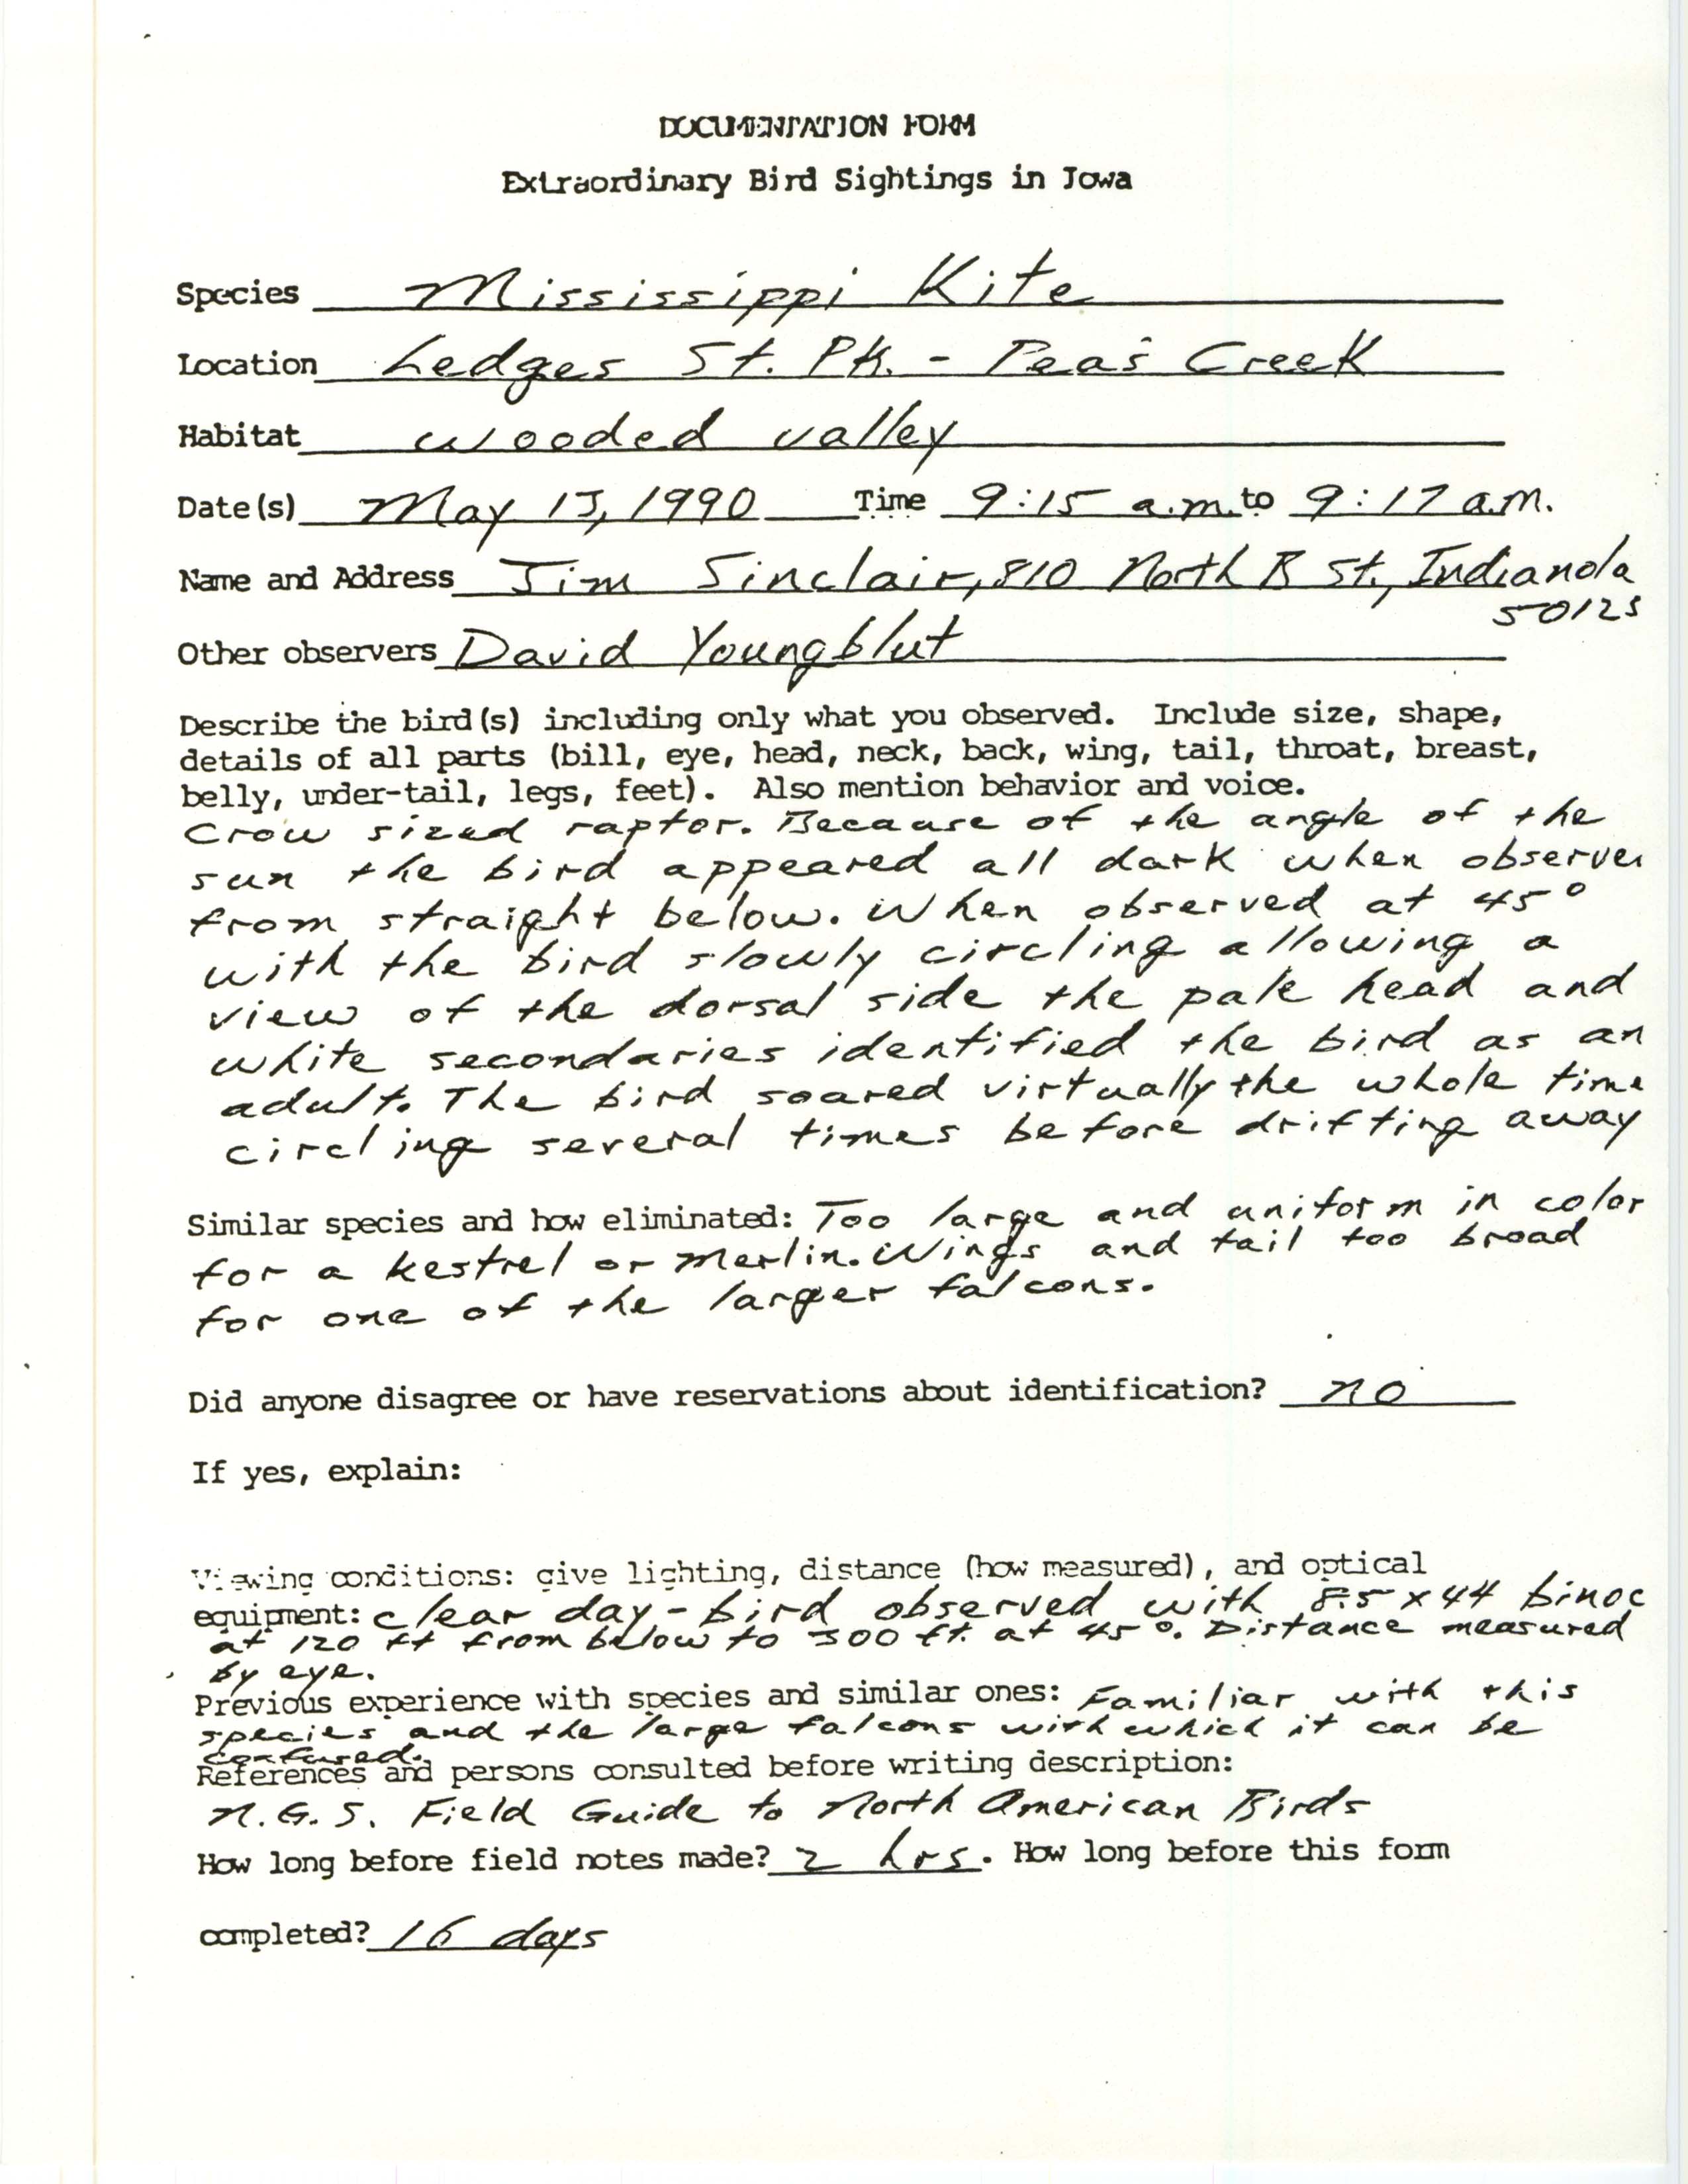 Rare bird documentation form for Mississippi Kite at Ledges State Park, 1990